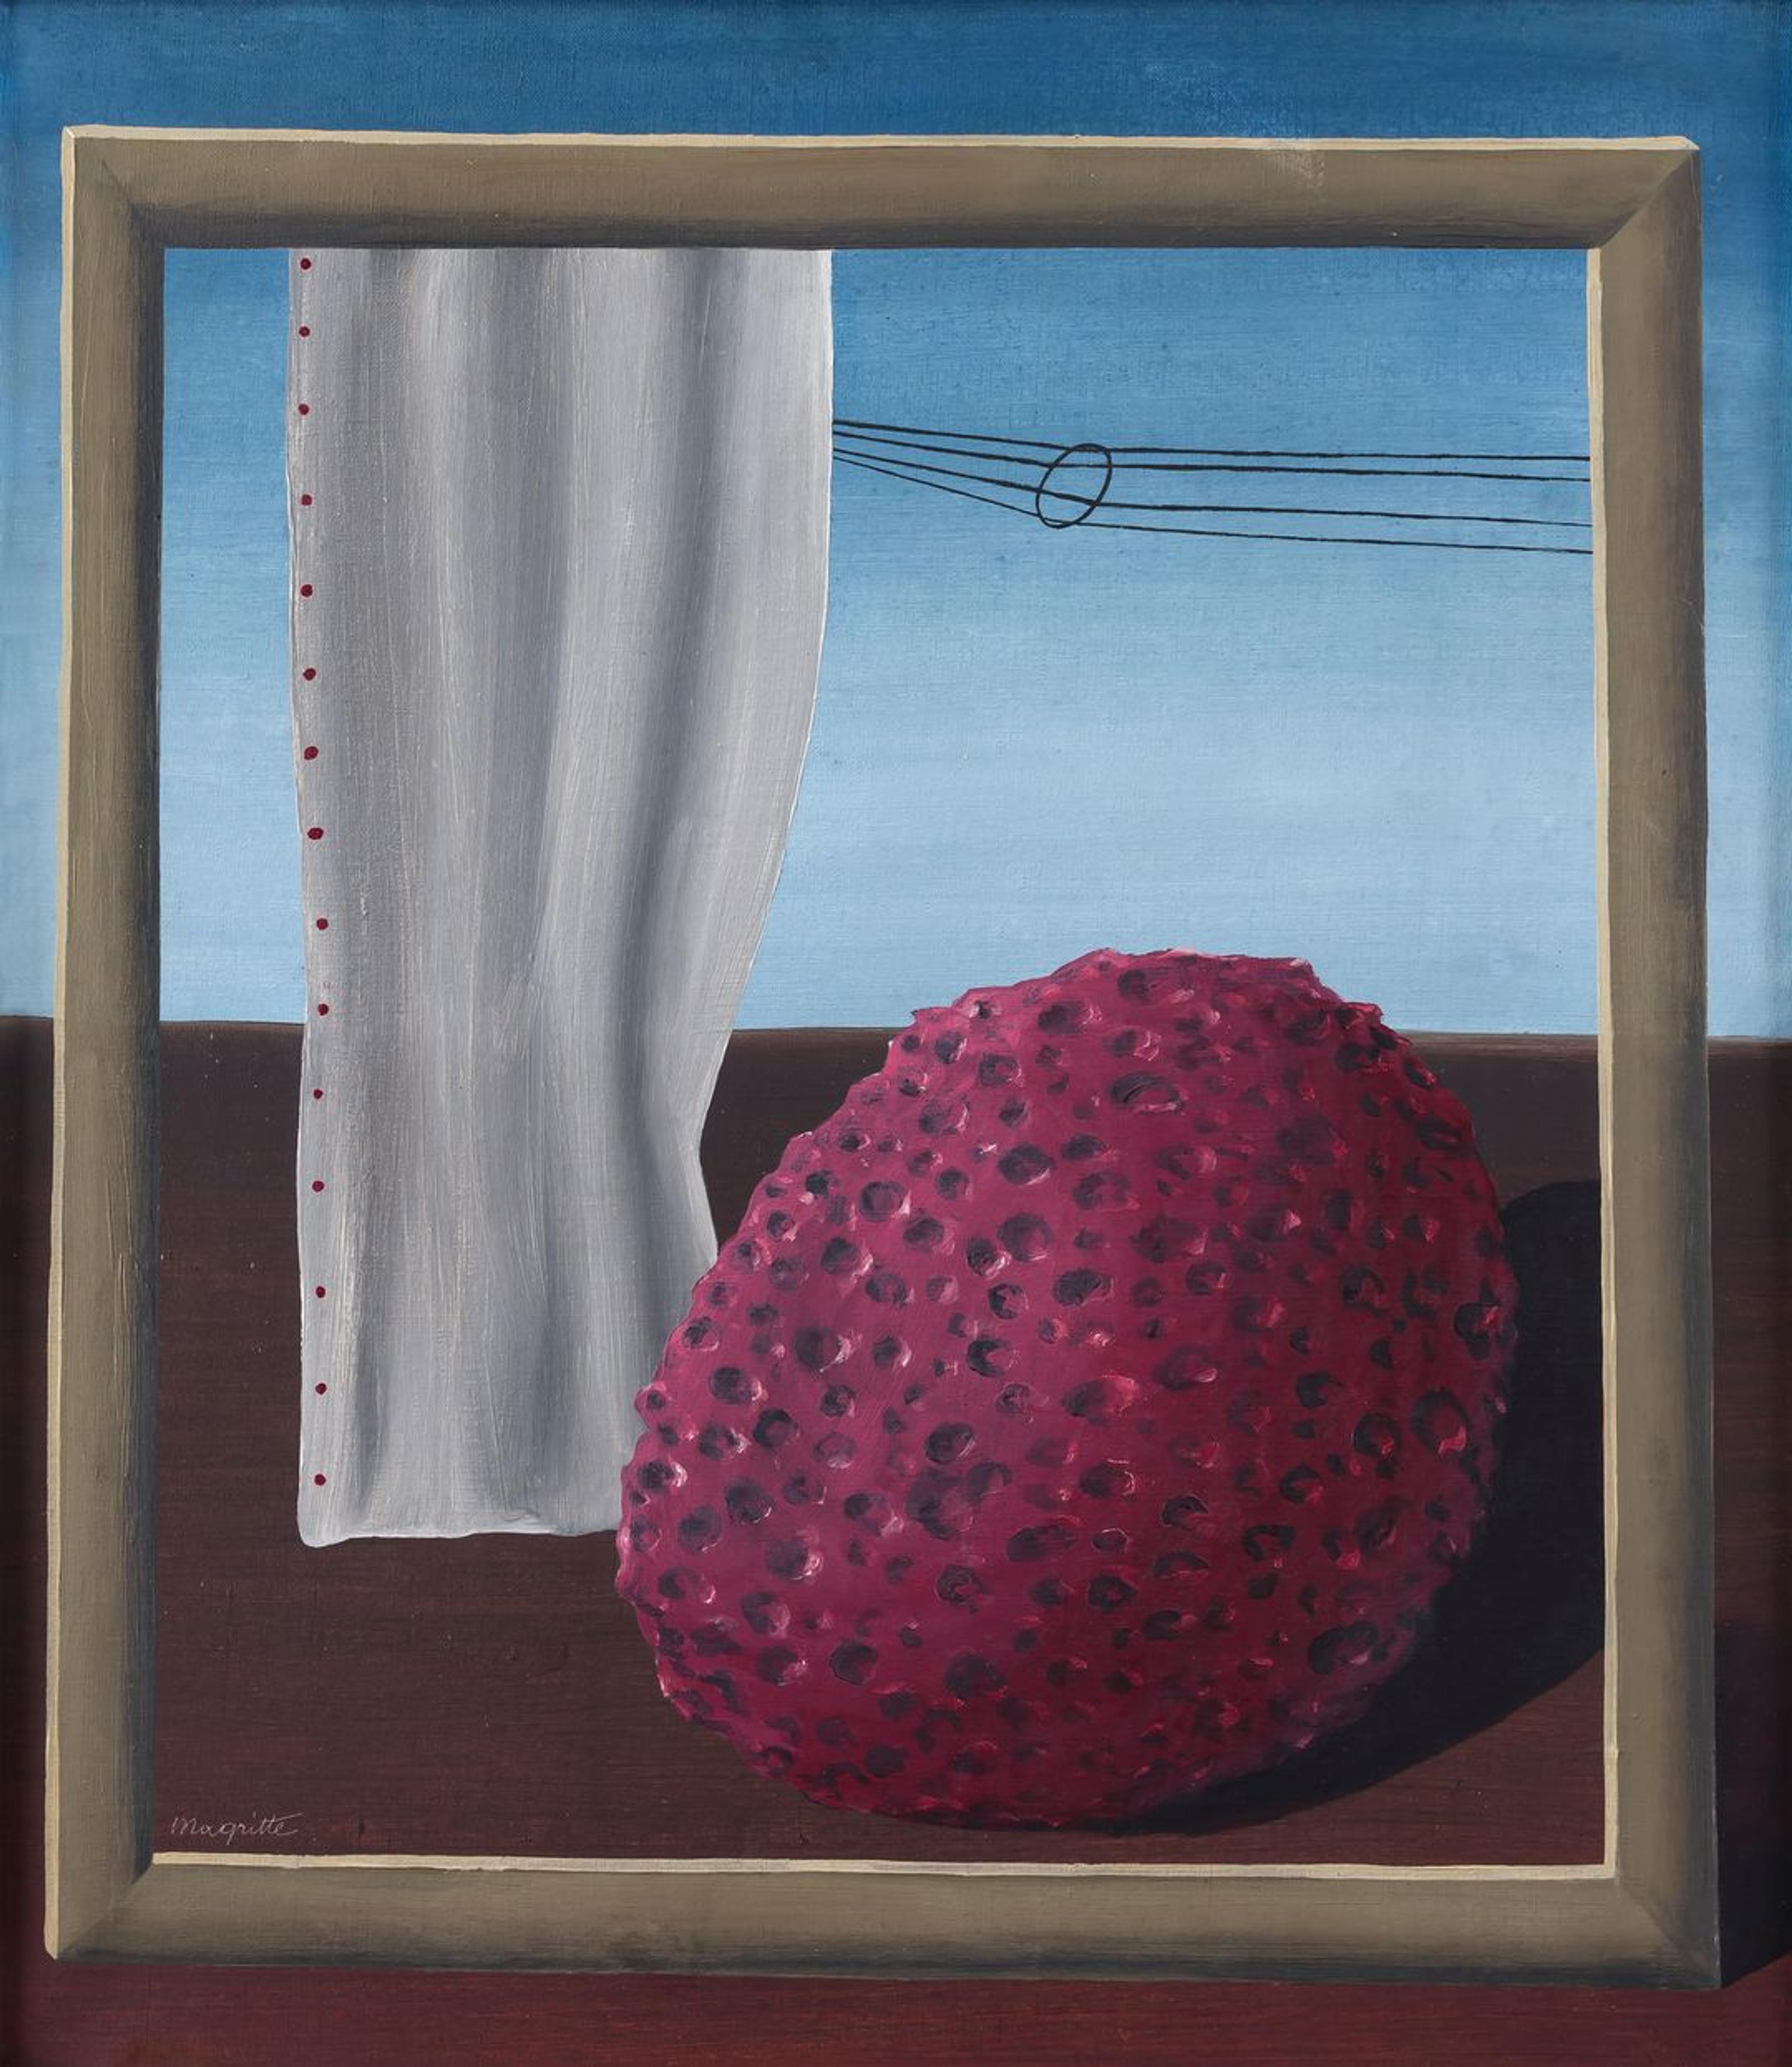 Et maleri viser et slags drømmelandskap, med en ramme foran en hvit gardin og en rødlig meteoritt.